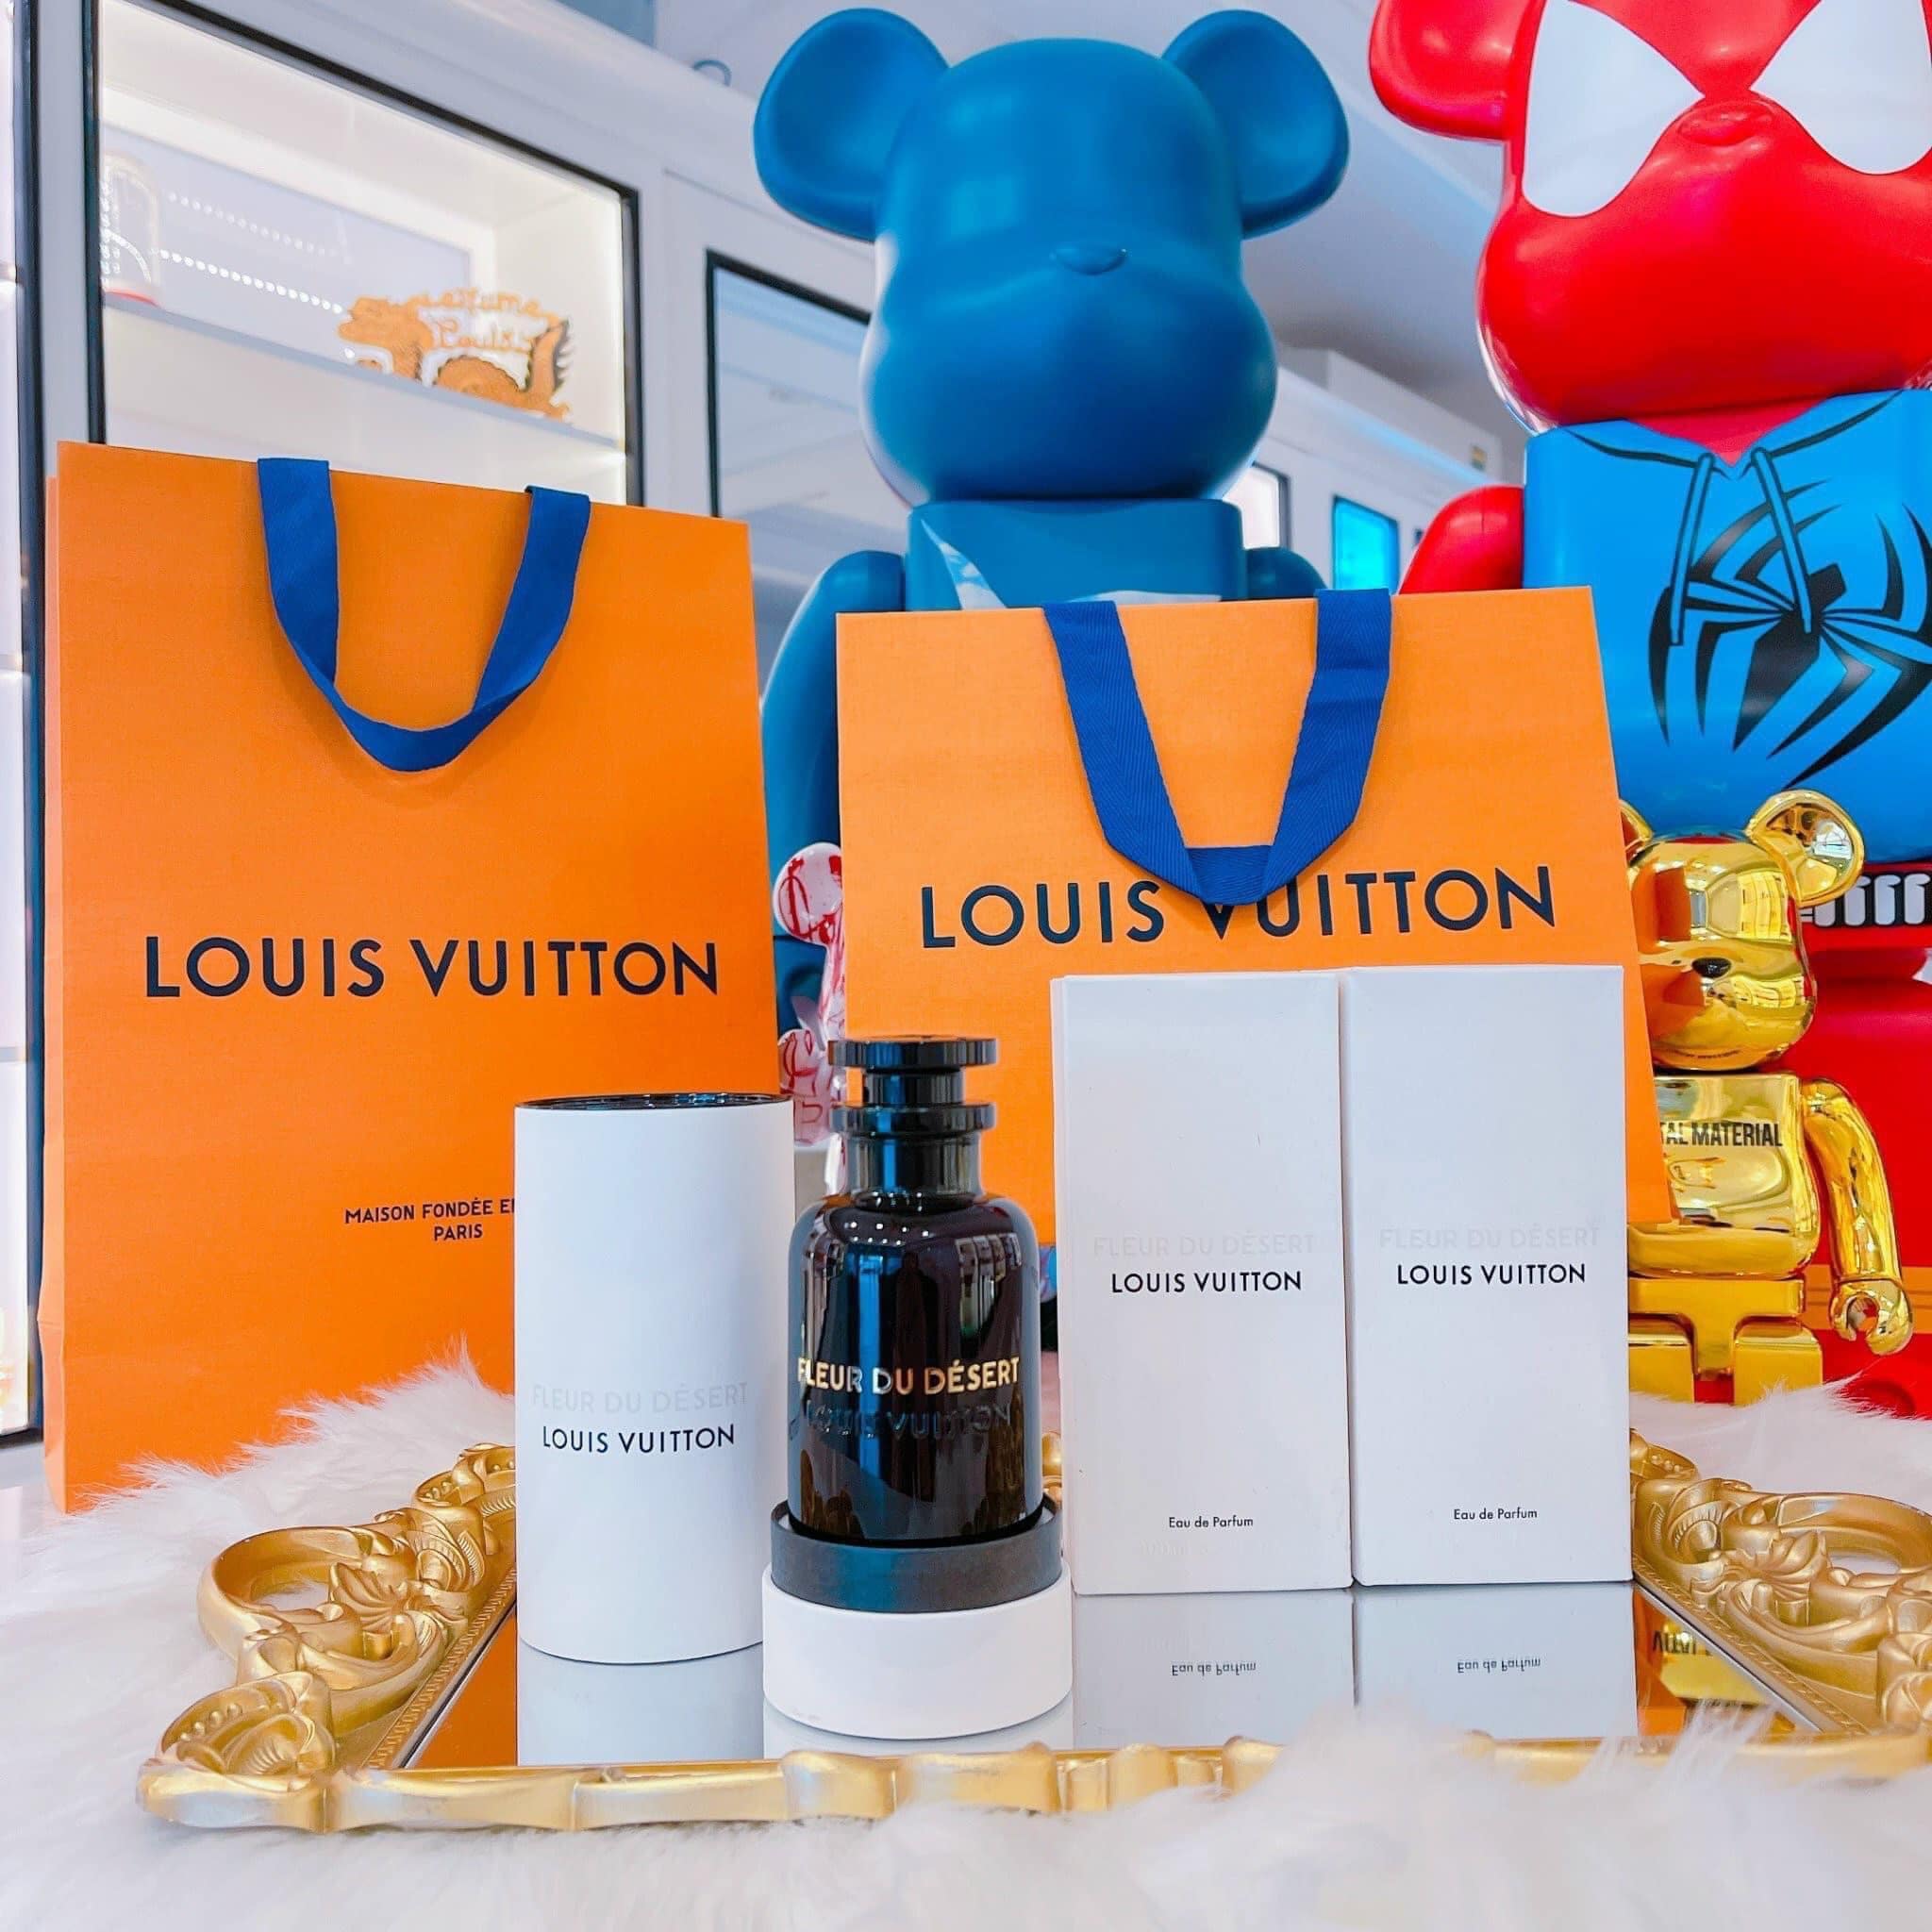 Louis Vuitton Fleur Du Desert 3 - Nuochoarosa.com - Nước hoa cao cấp, chính hãng giá tốt, mẫu mới